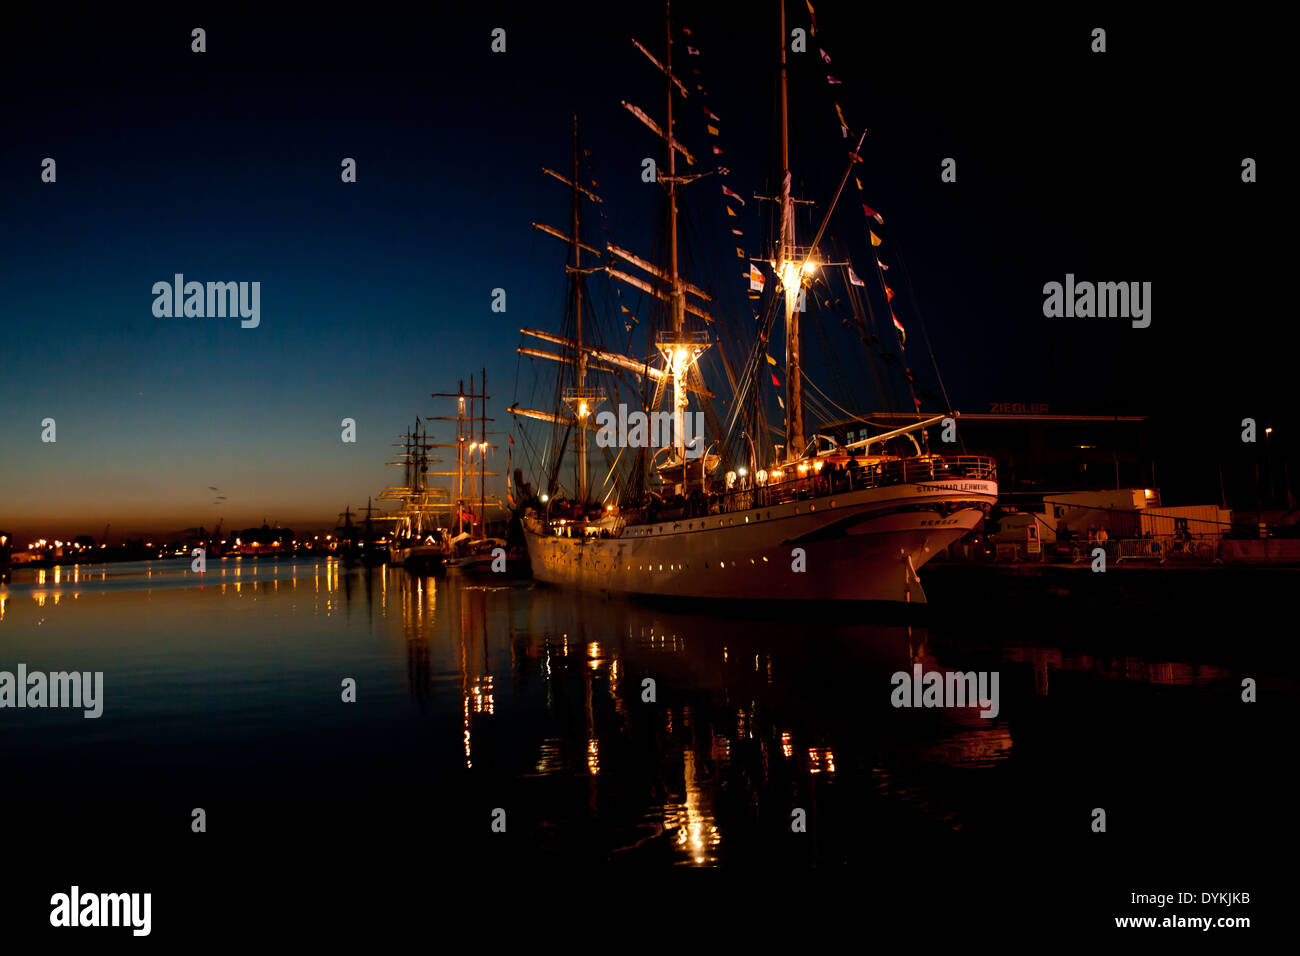 Segeln Sie 19. Jahrhundert Schiff von den Tall Ship Race in Antwerpen in der Nacht wunderschön beleuchtet. Stockfoto